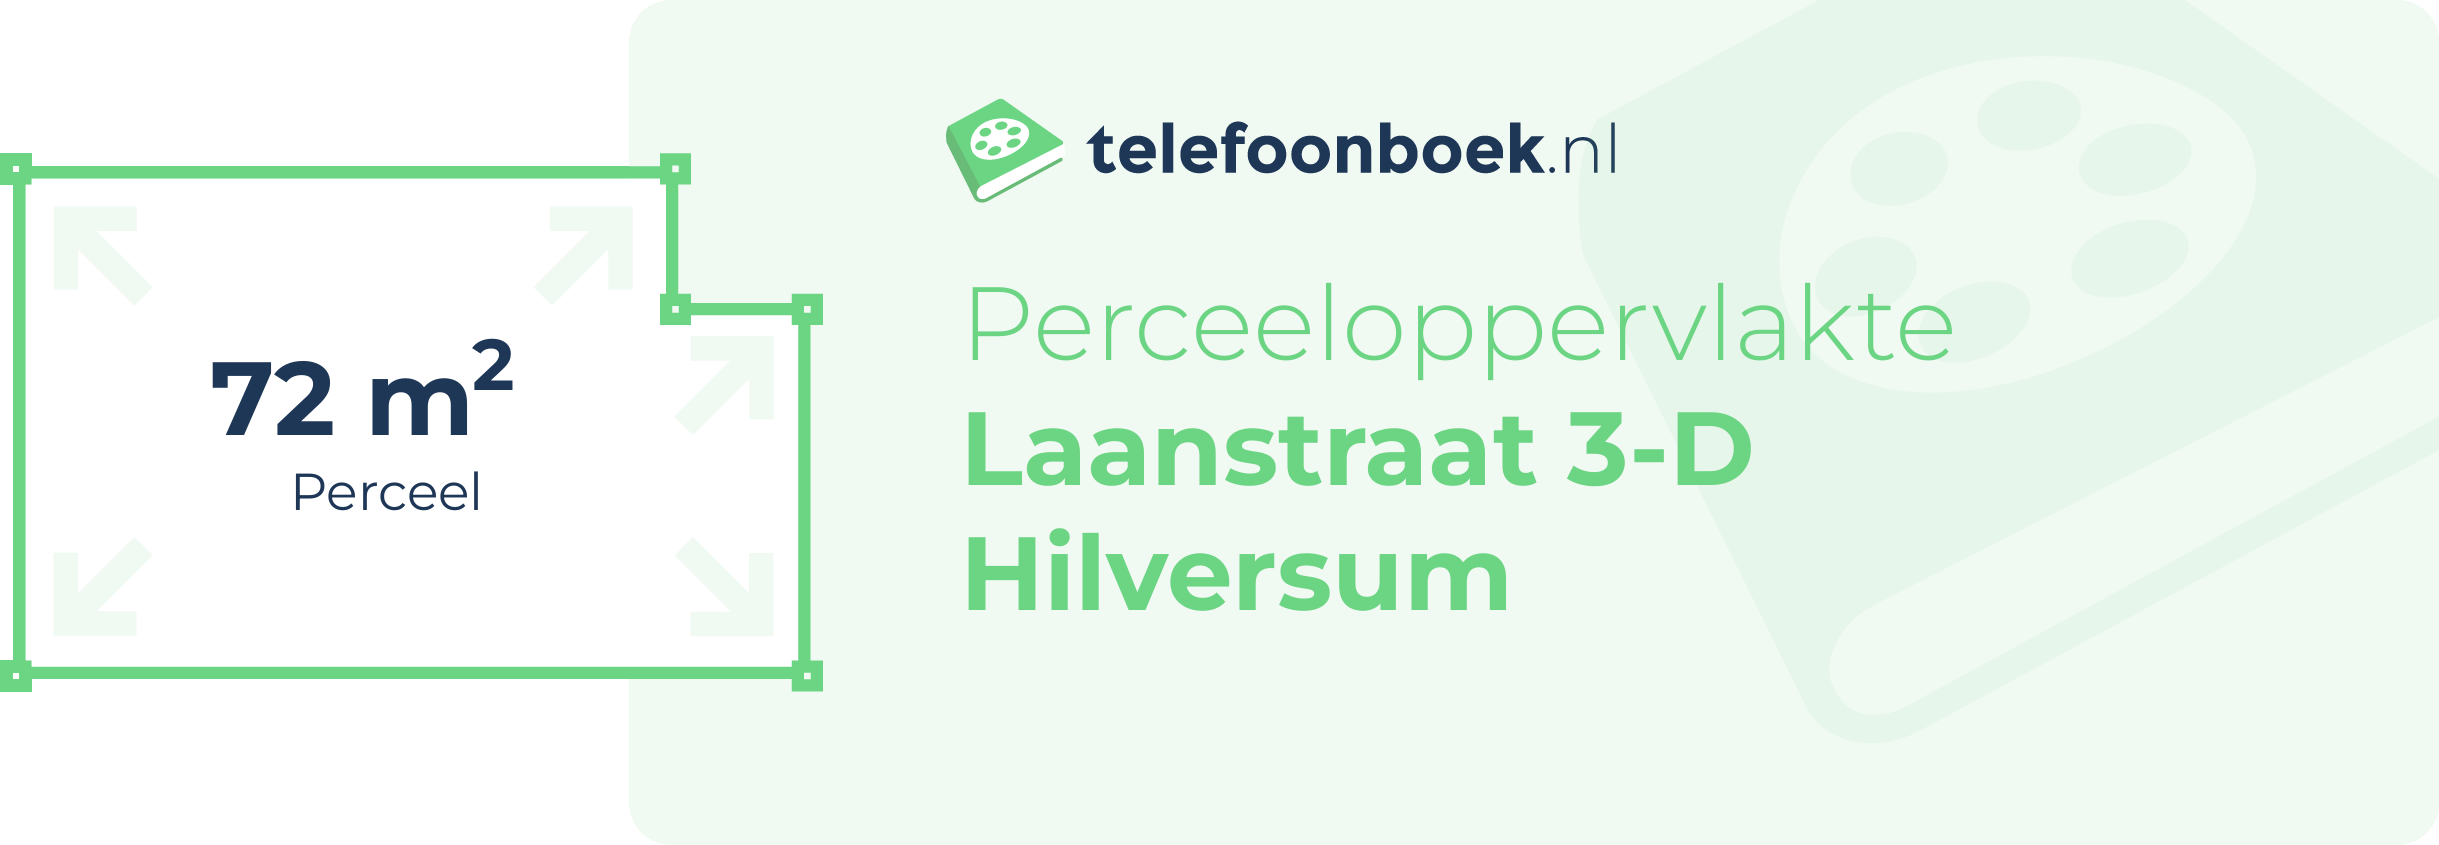 Perceeloppervlakte Laanstraat 3-D Hilversum